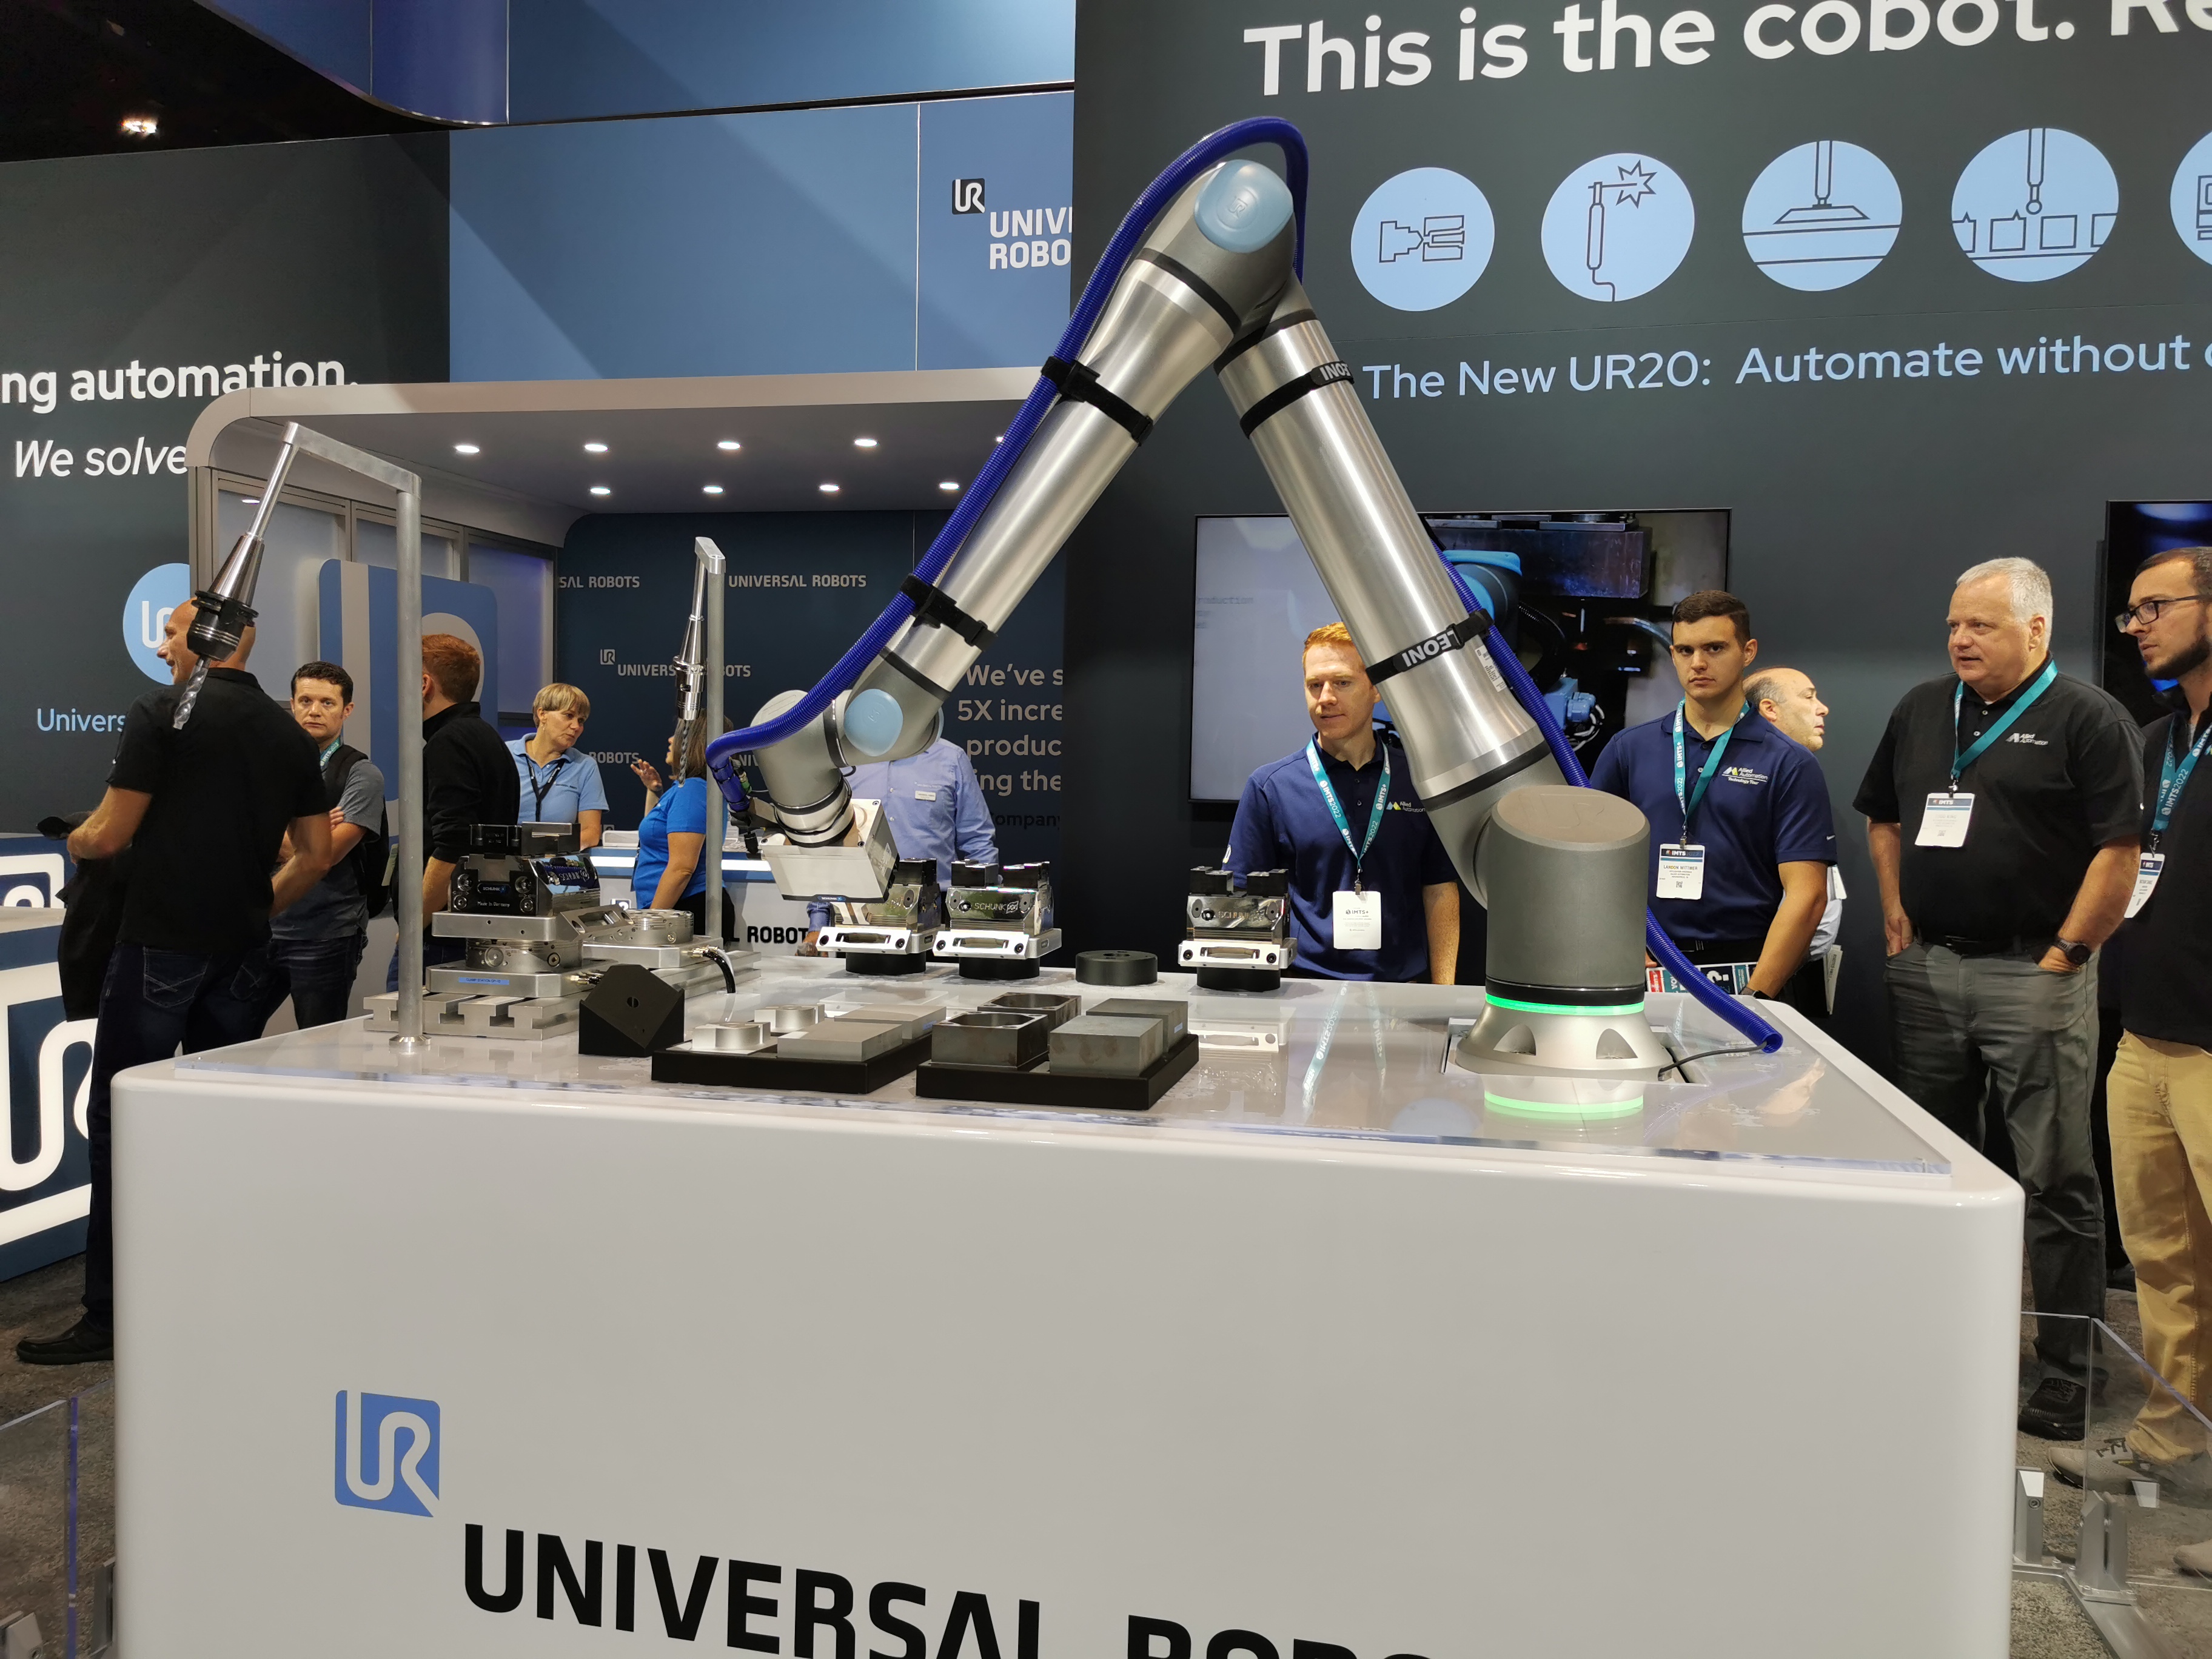  Universal  Robots  espera que el UR20 se utilice para soldadura, manipulación de materiales, carga y atención de máquinas